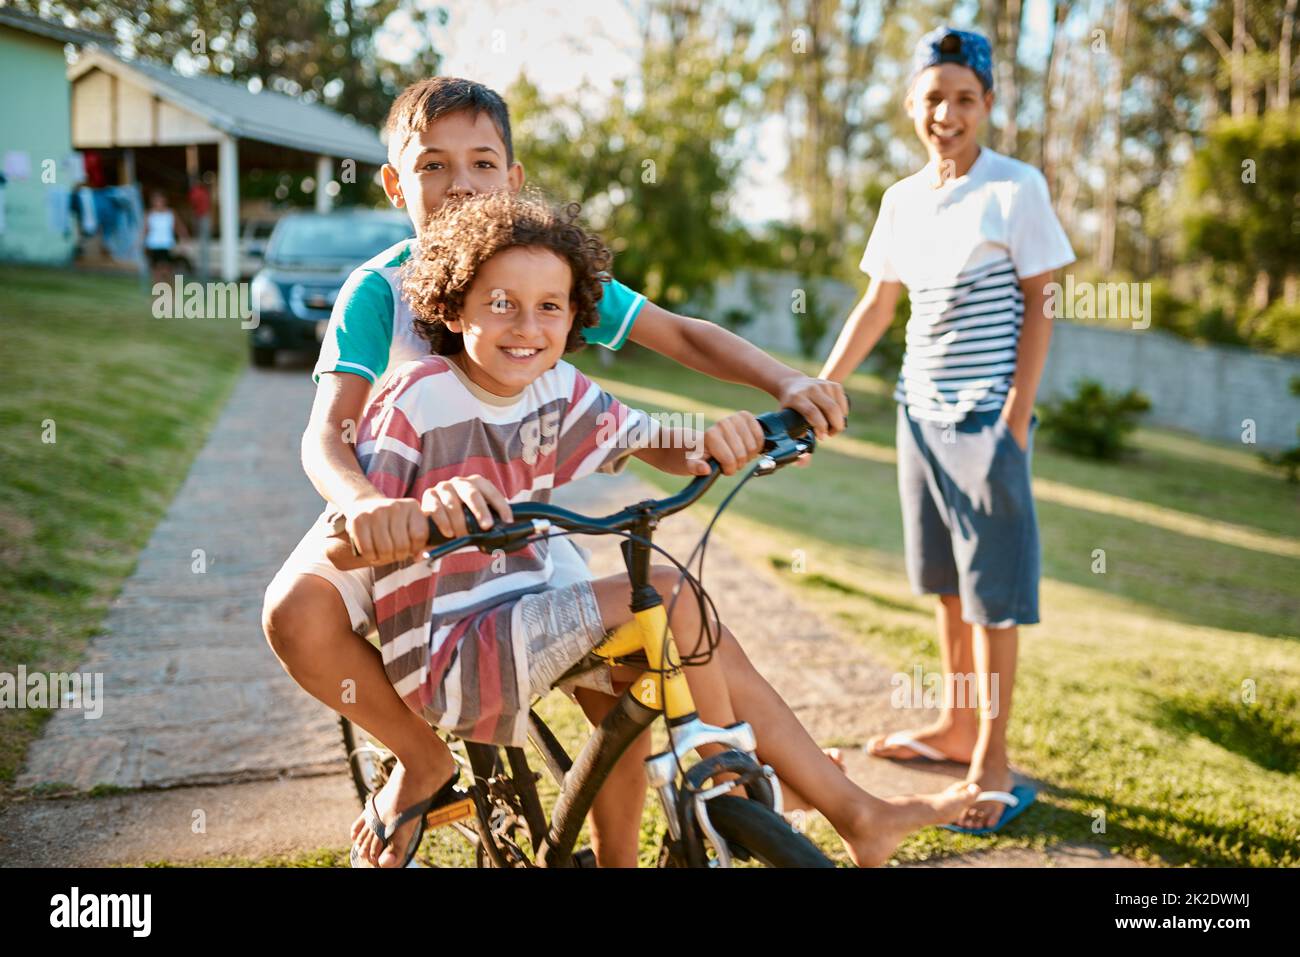 Erste Regel der Brüderlichkeit Fahren Sie gemeinsam mit dem Fahrrad. Aufnahme von glücklichen jungen Brüdern, die gemeinsam in ihrem Hinterhof ein Fahrrad fahren. Stockfoto